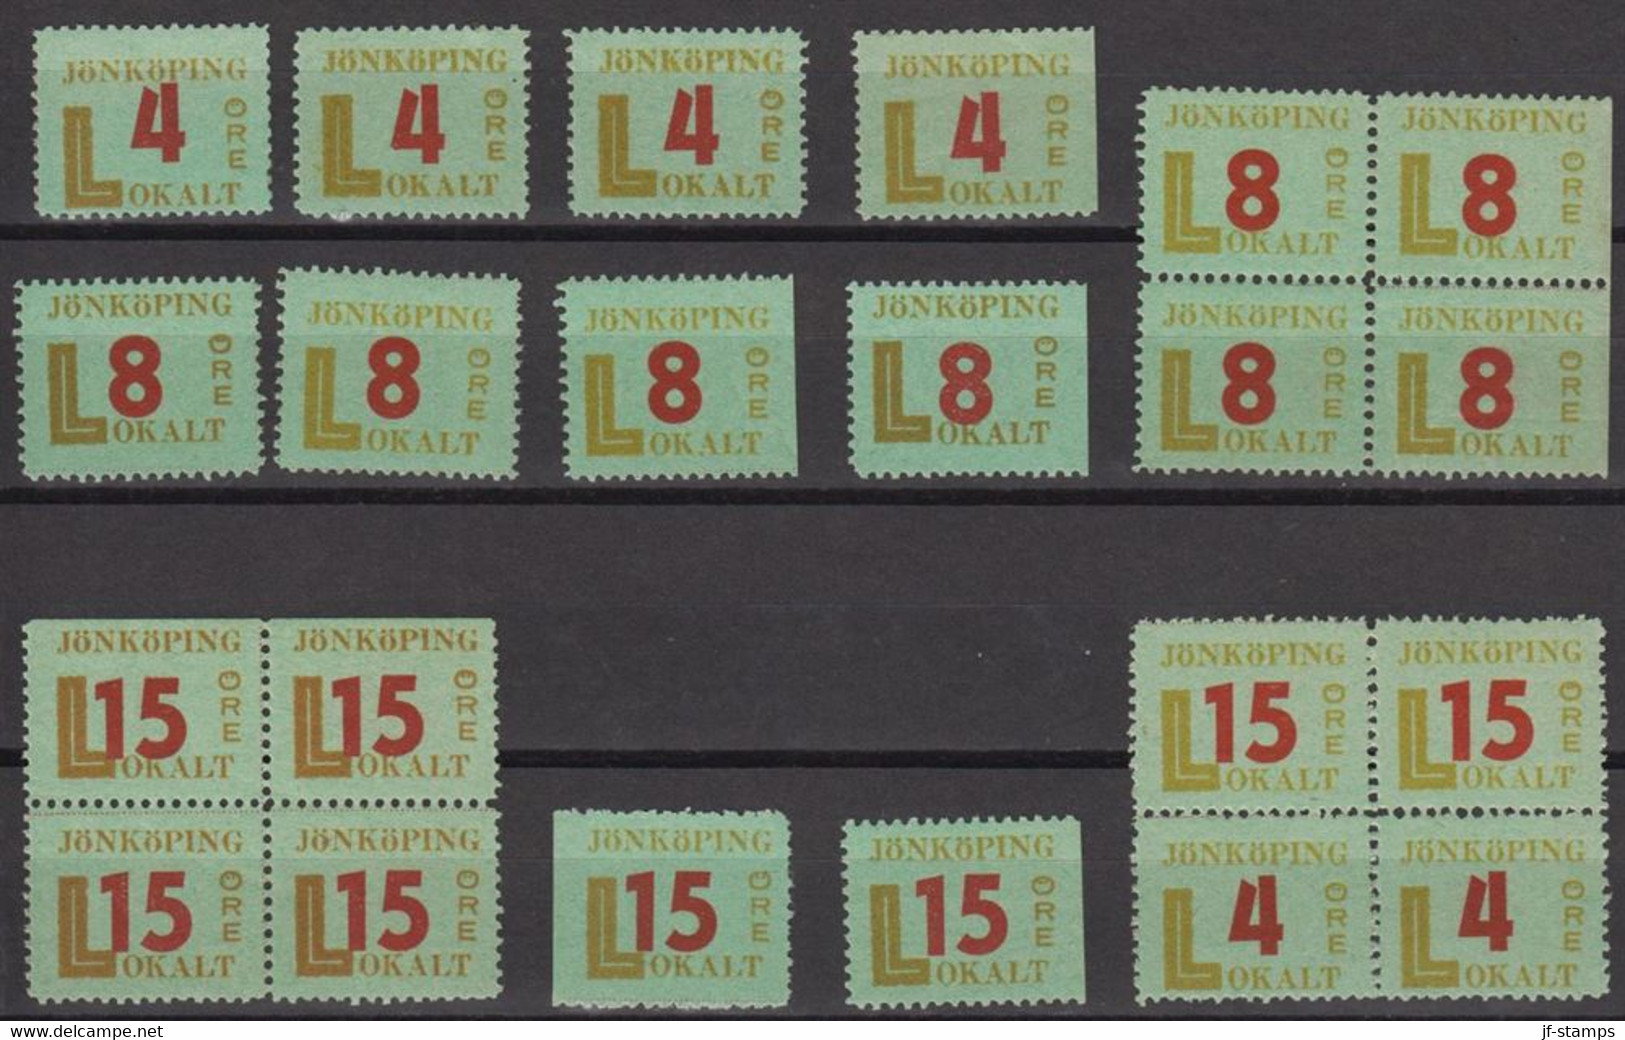 1945. SVERIGE. JÖNKÖPING LOKALT 6 Ex 4 öre + 8 Ex 8 ÖRE + 8 Ex 15 öre All Never Hinged Stamps. Note The Bl... - JF520102 - Local Post Stamps